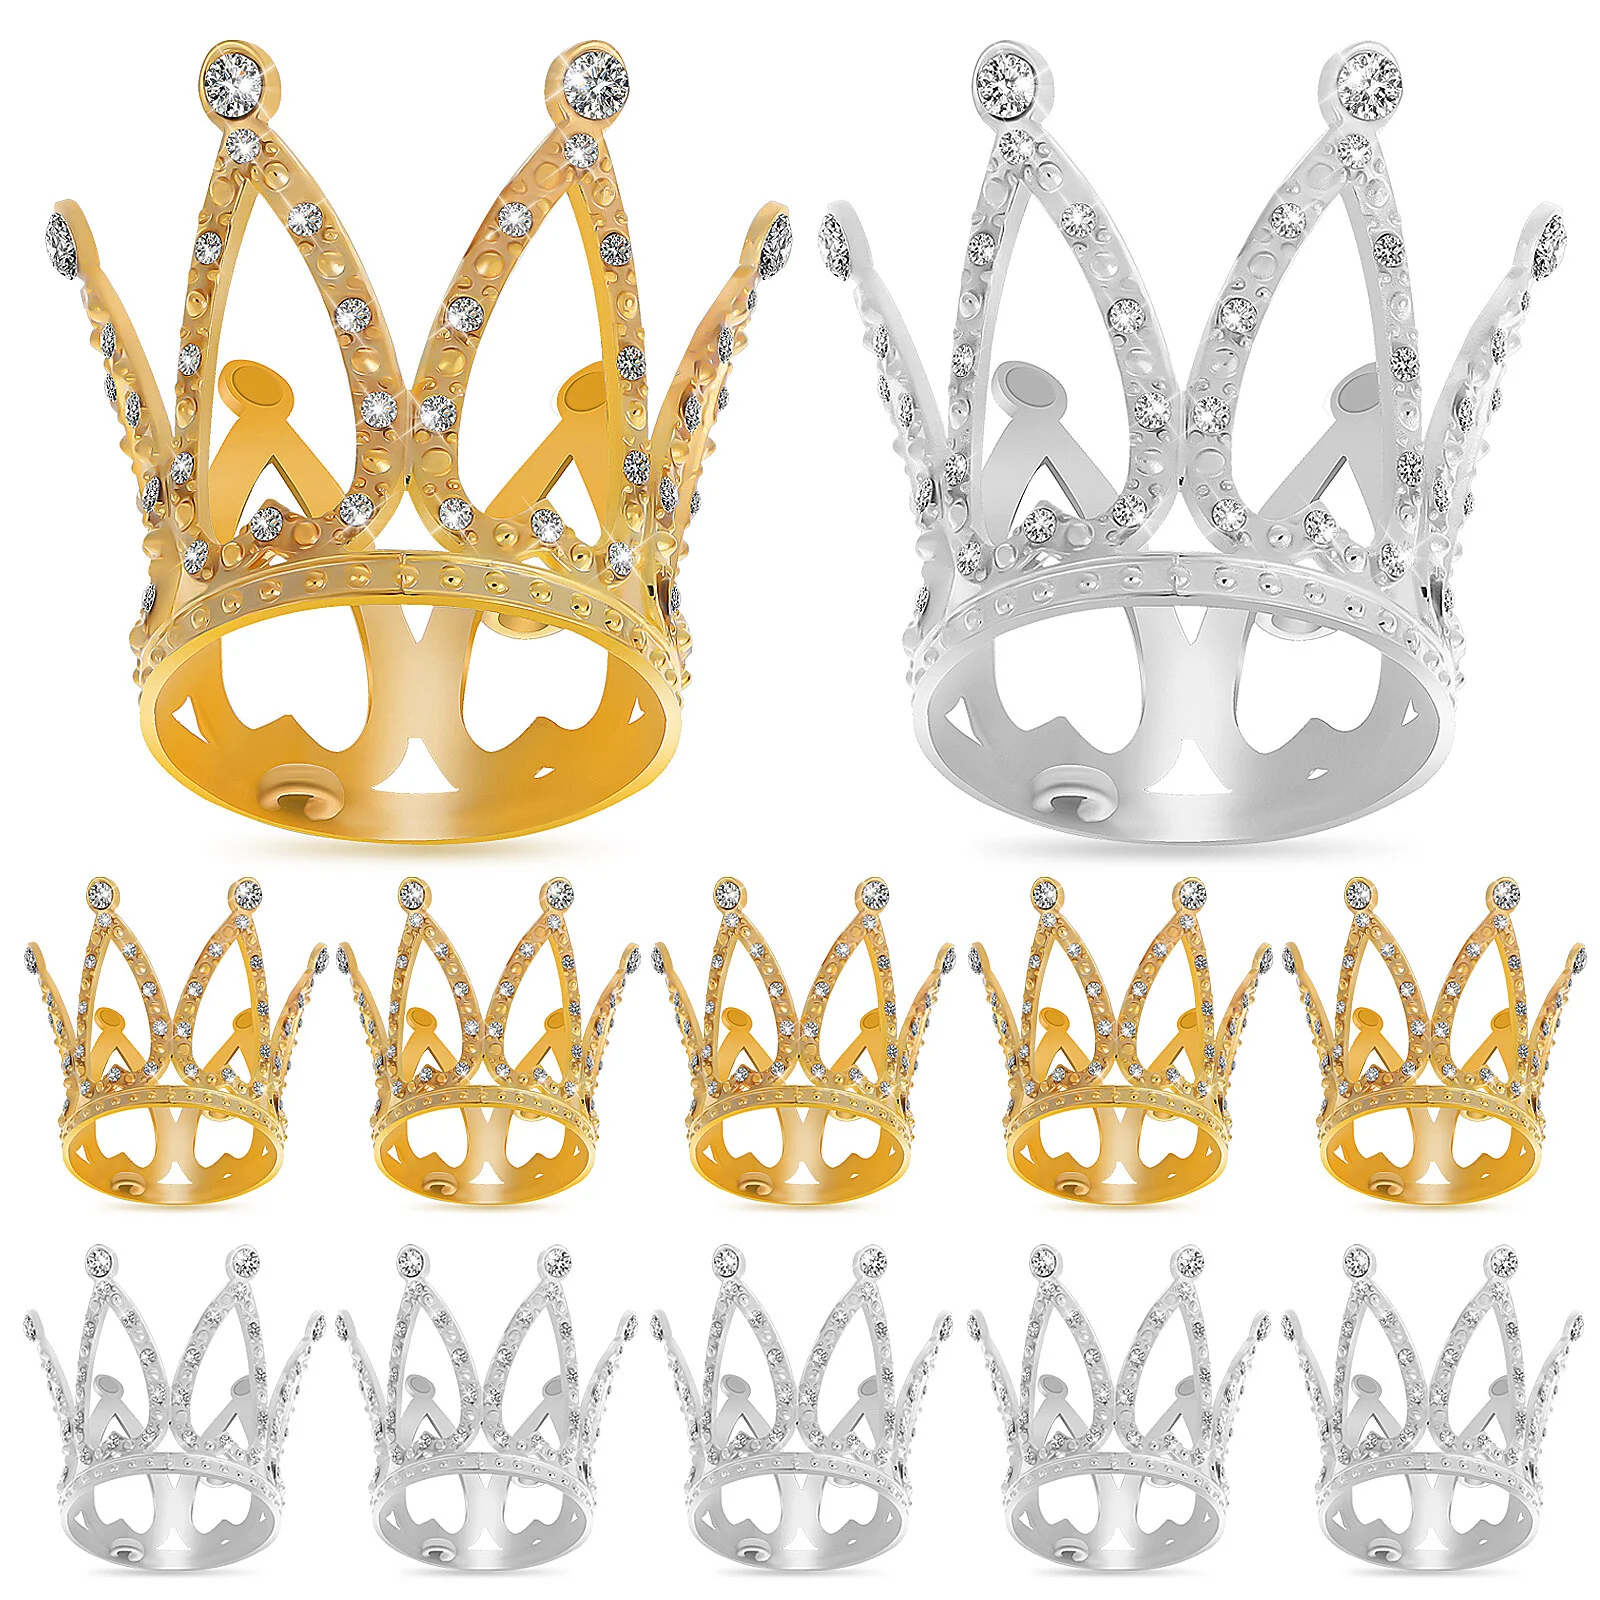 

12 шт. короны, искусственные декоративные блестящие мини-короны, украшения для торта, товары для вечеринок